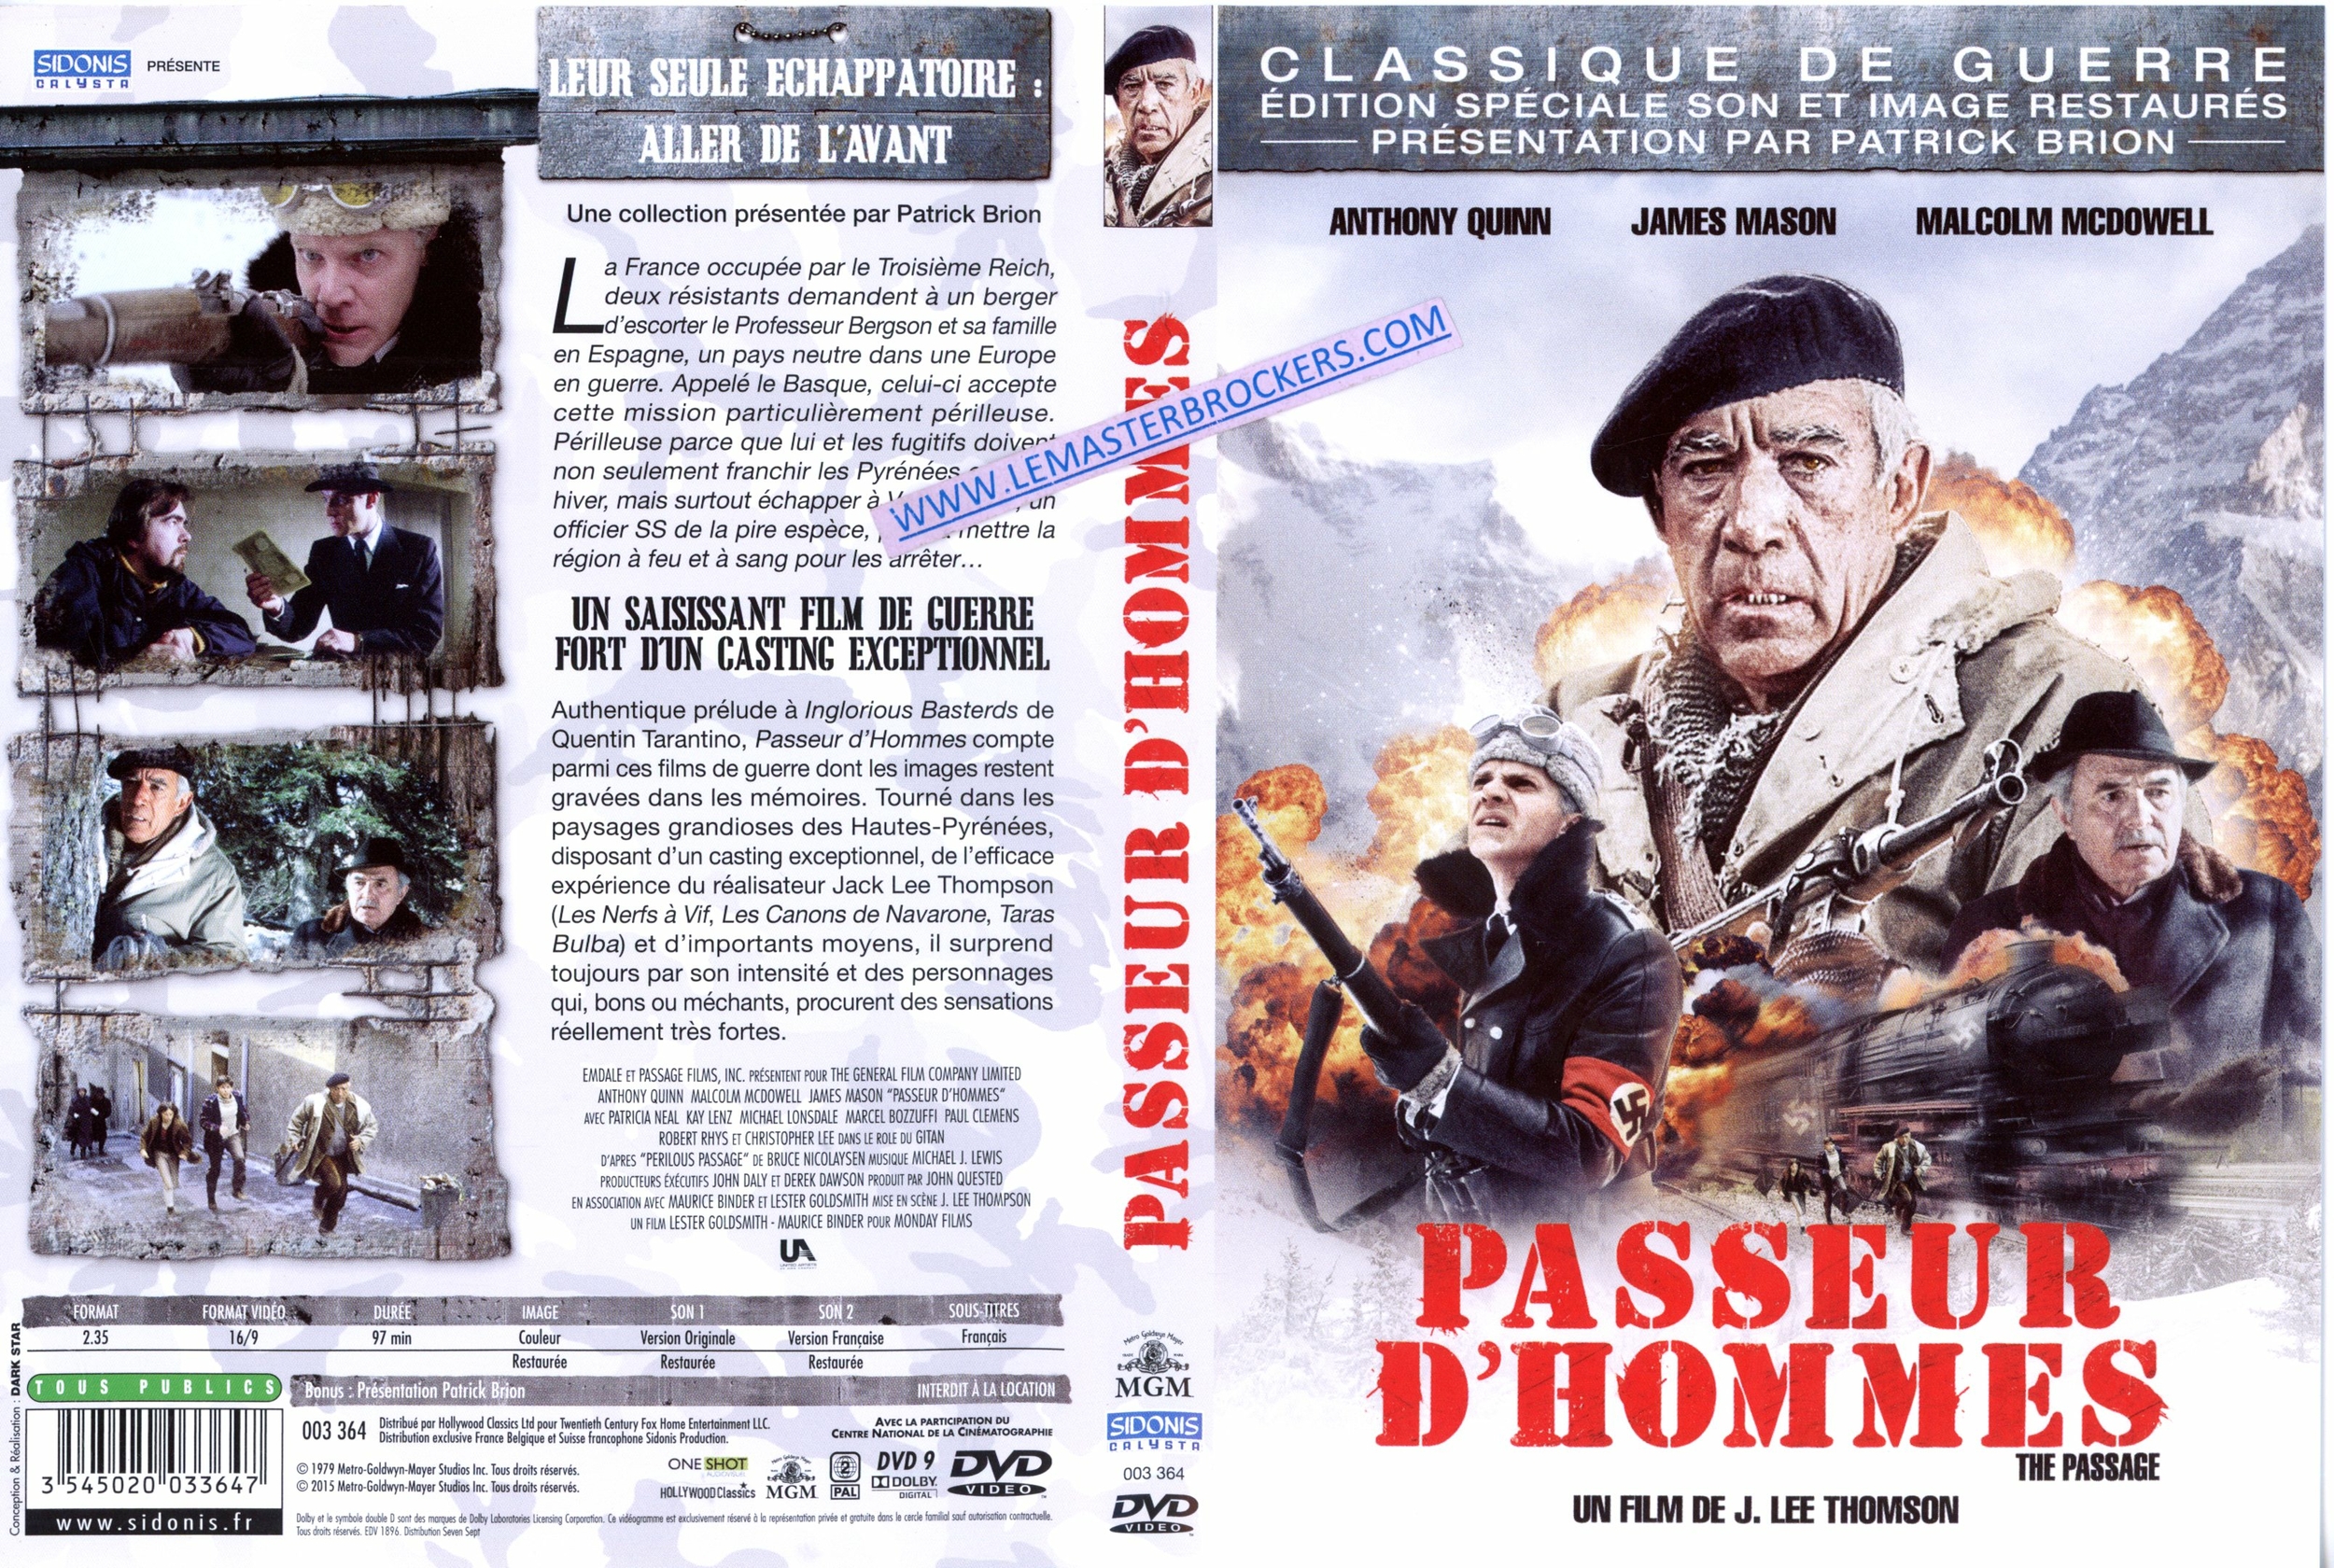 PASSEUR D'HOMME DVD EDITION SPECIALE